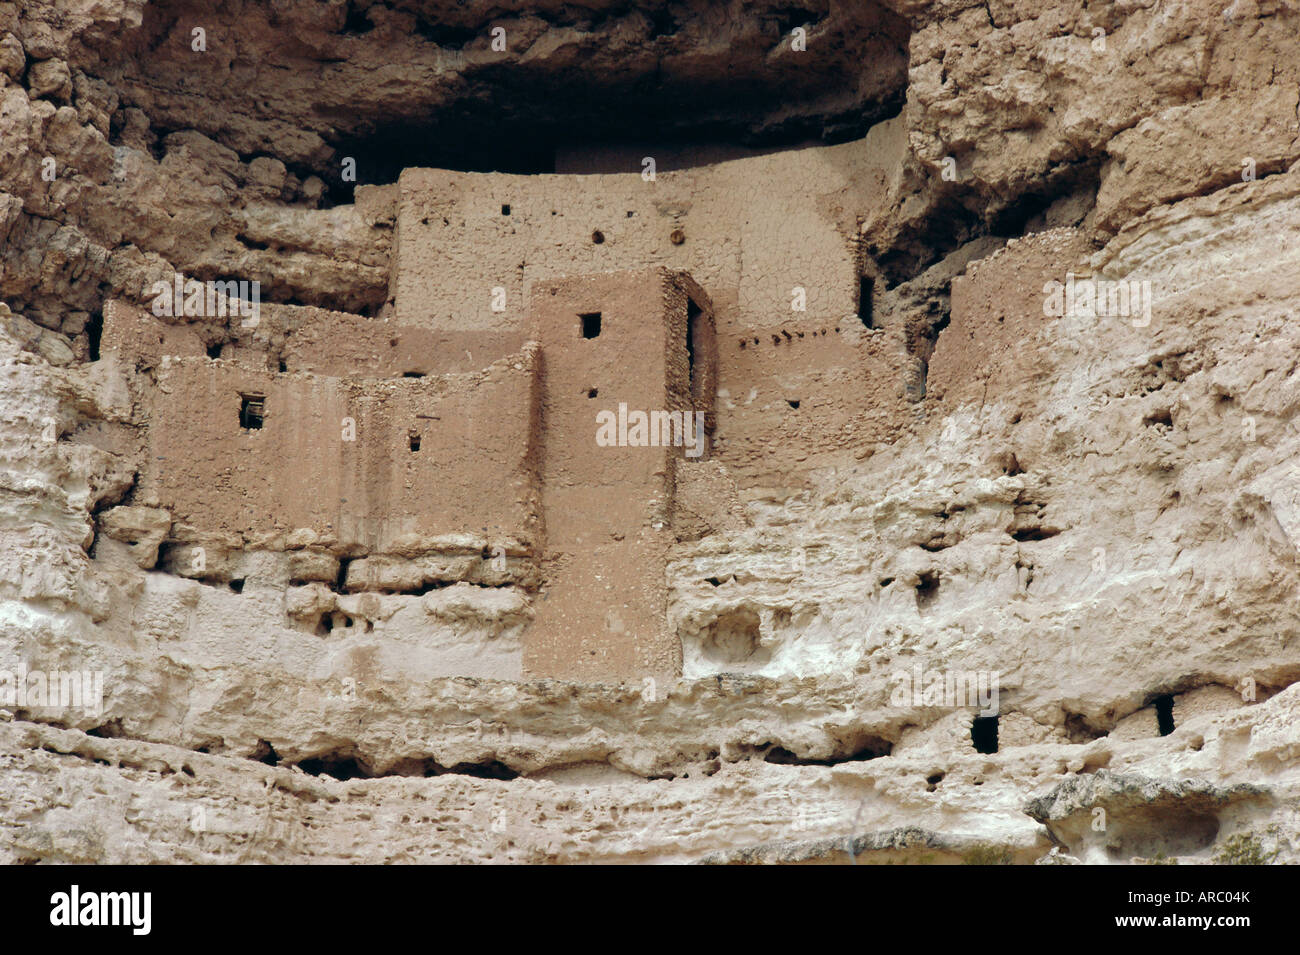 Montezuma Castle dating from 1100-1400 AD in limestone cliff, Sinagua, Arizona, USA, North America Stock Photo